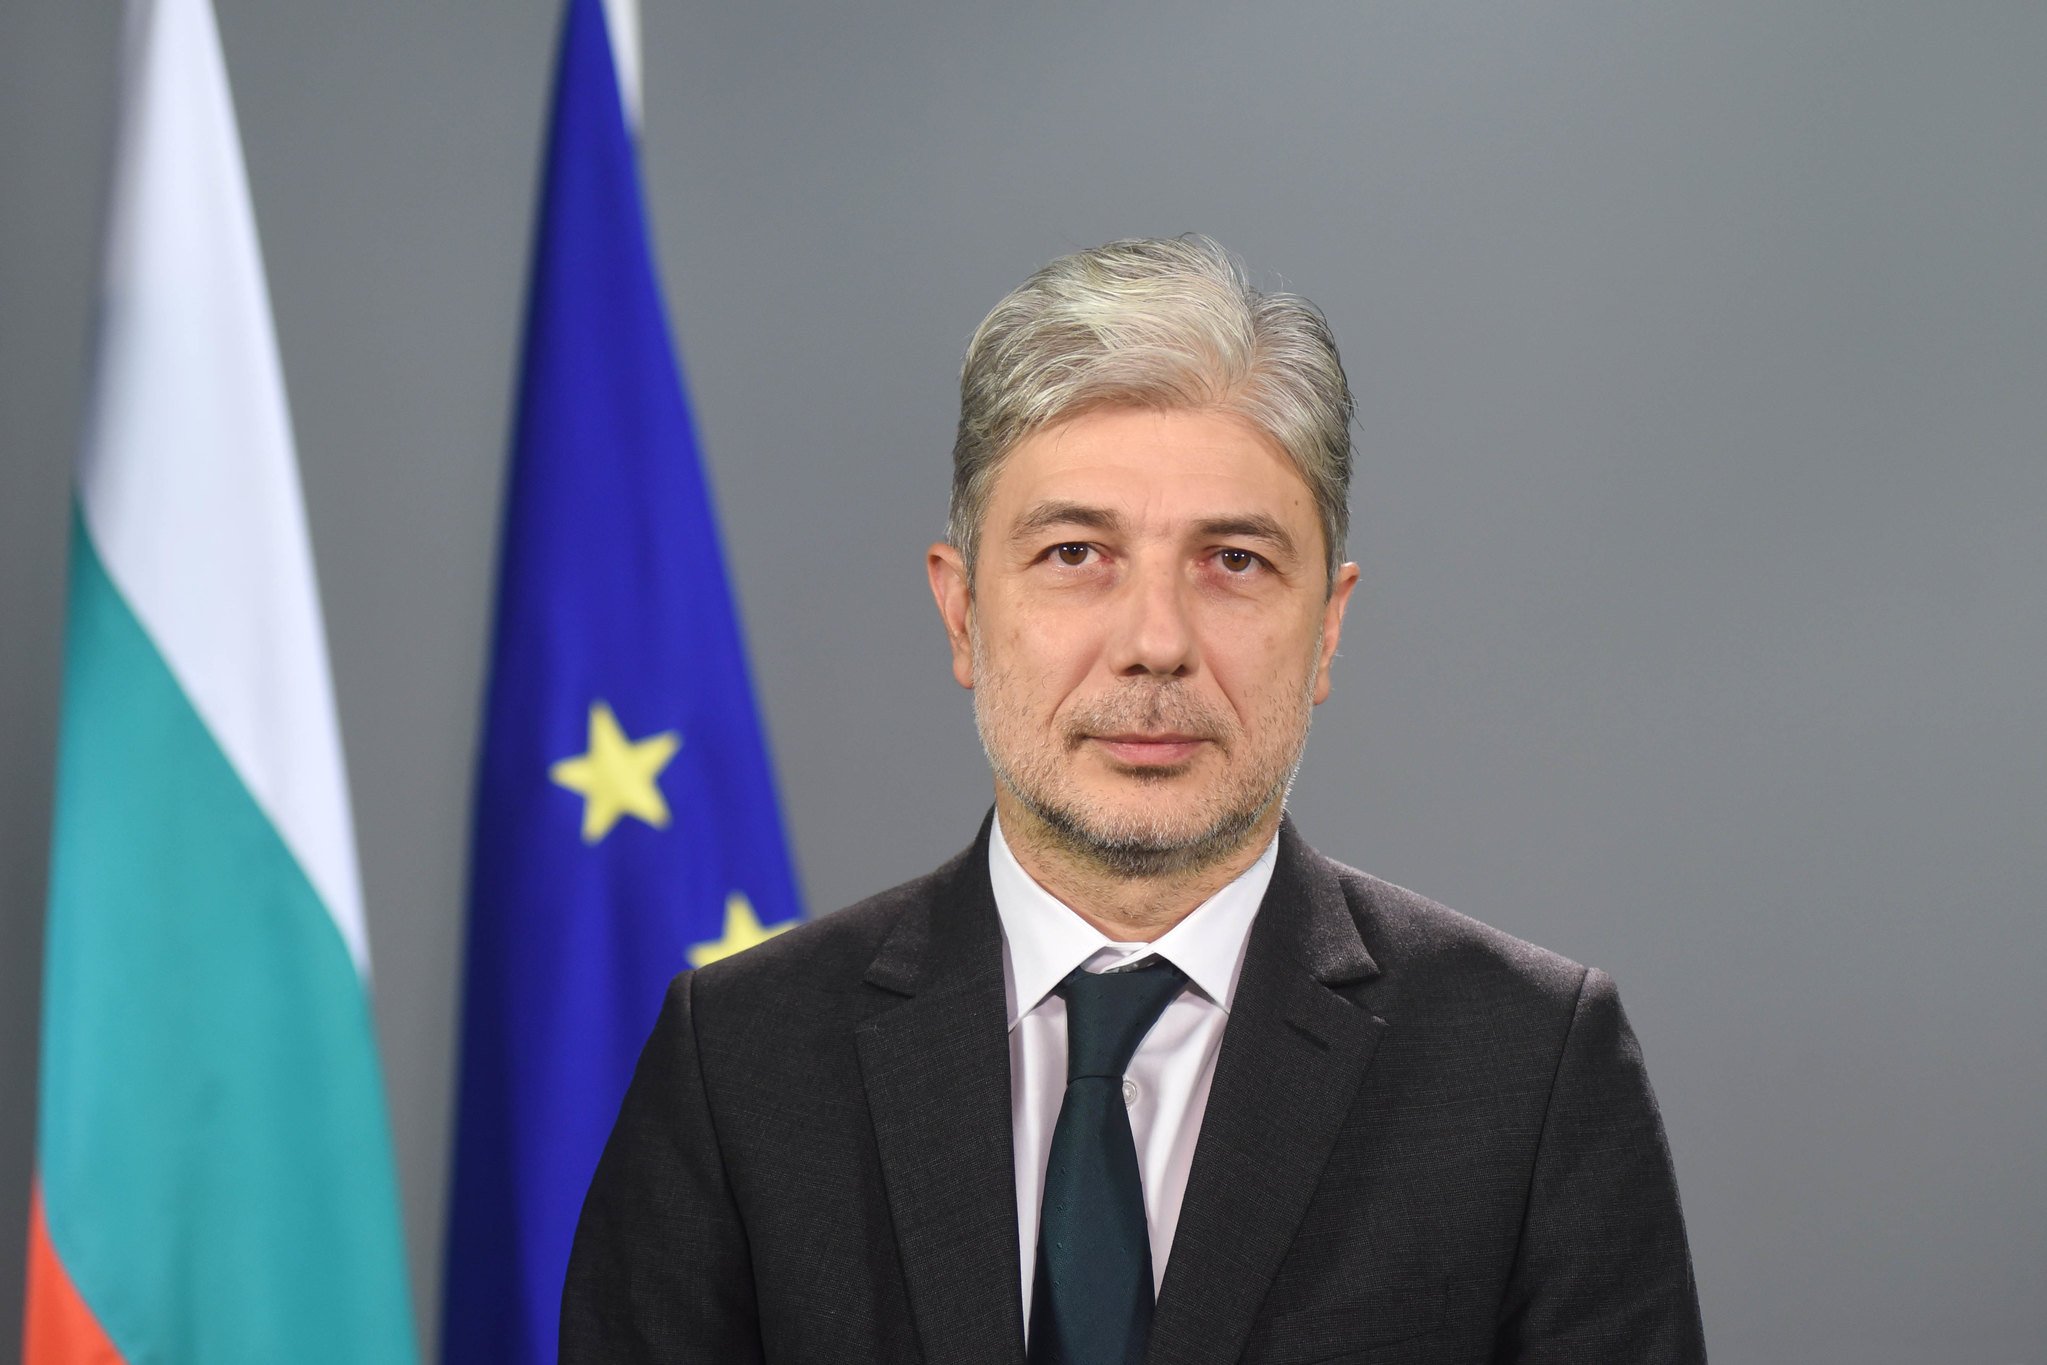 Нено Димов, бивш министър на околната среда и водите, предложен от ВМРО, в третото правителство на Бойко Борисов, ГЕРБ